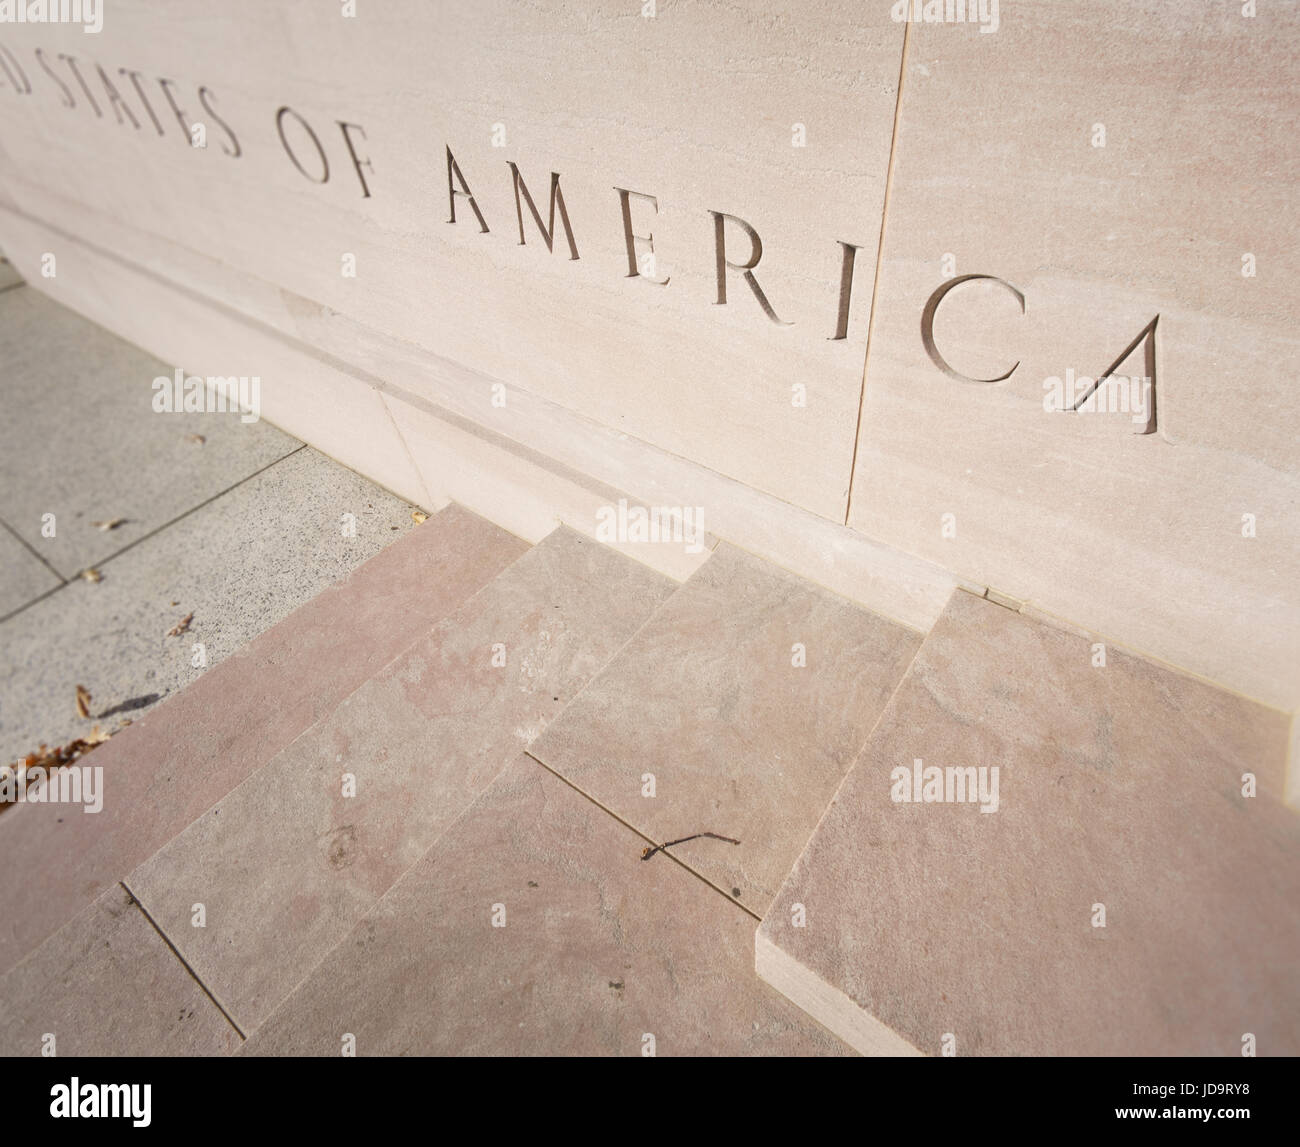 Angleview élevé, Close up, États-Unis d'Amérique, lettres sculptées sur pierre. Washington capital usa 2016 automne Banque D'Images